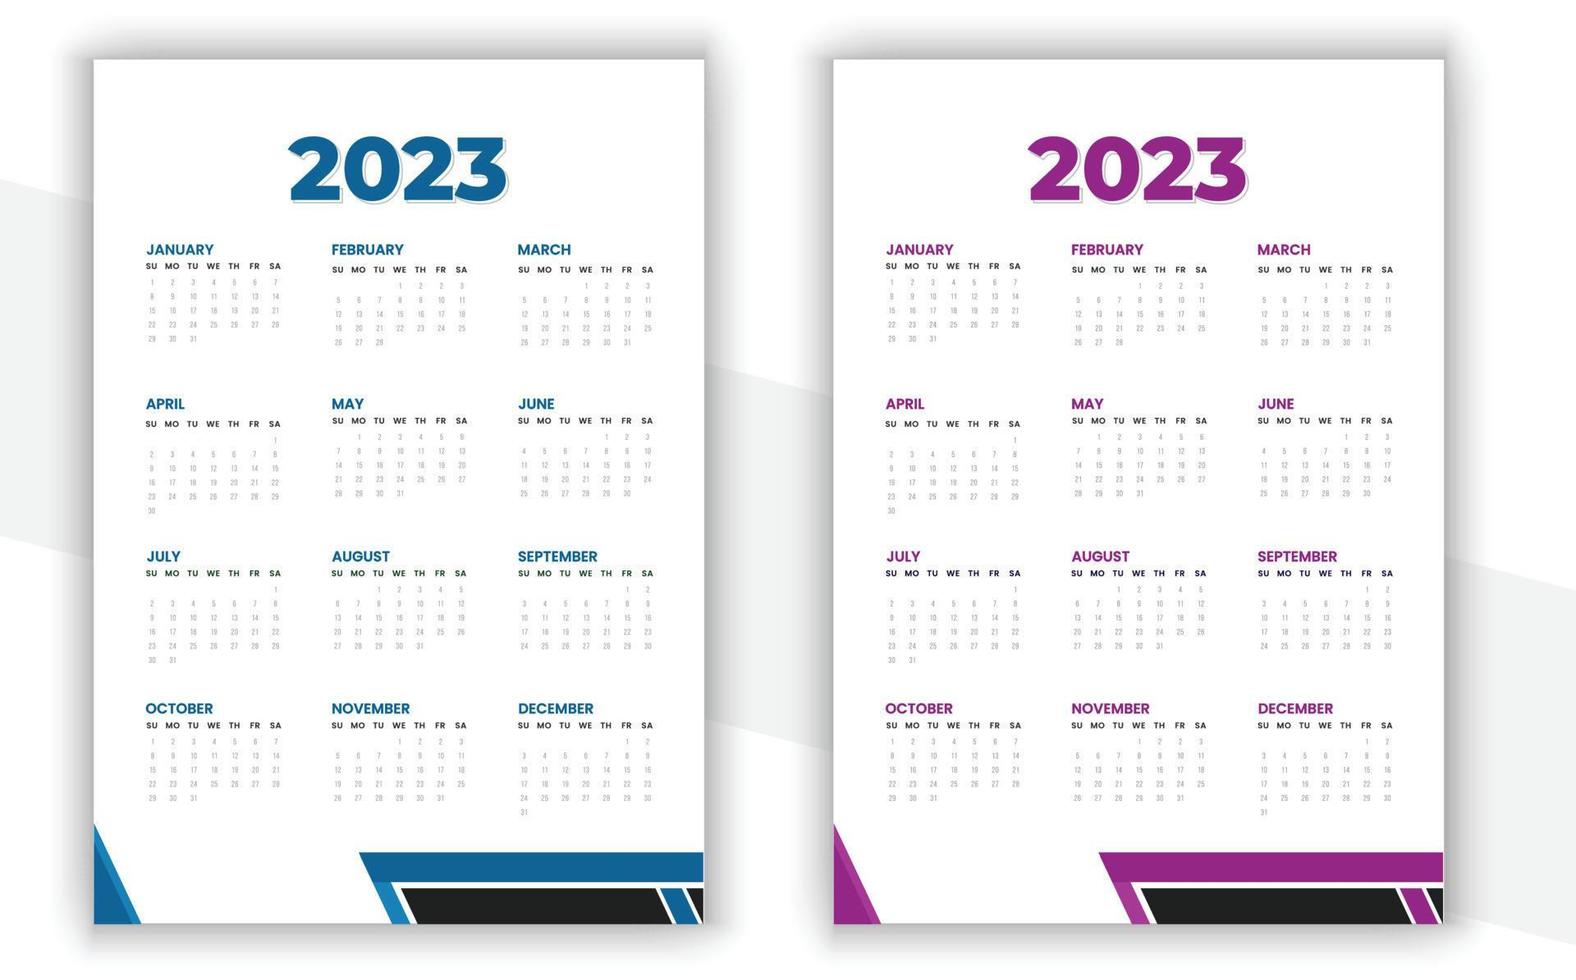 2023 Wall Calendar Design vector